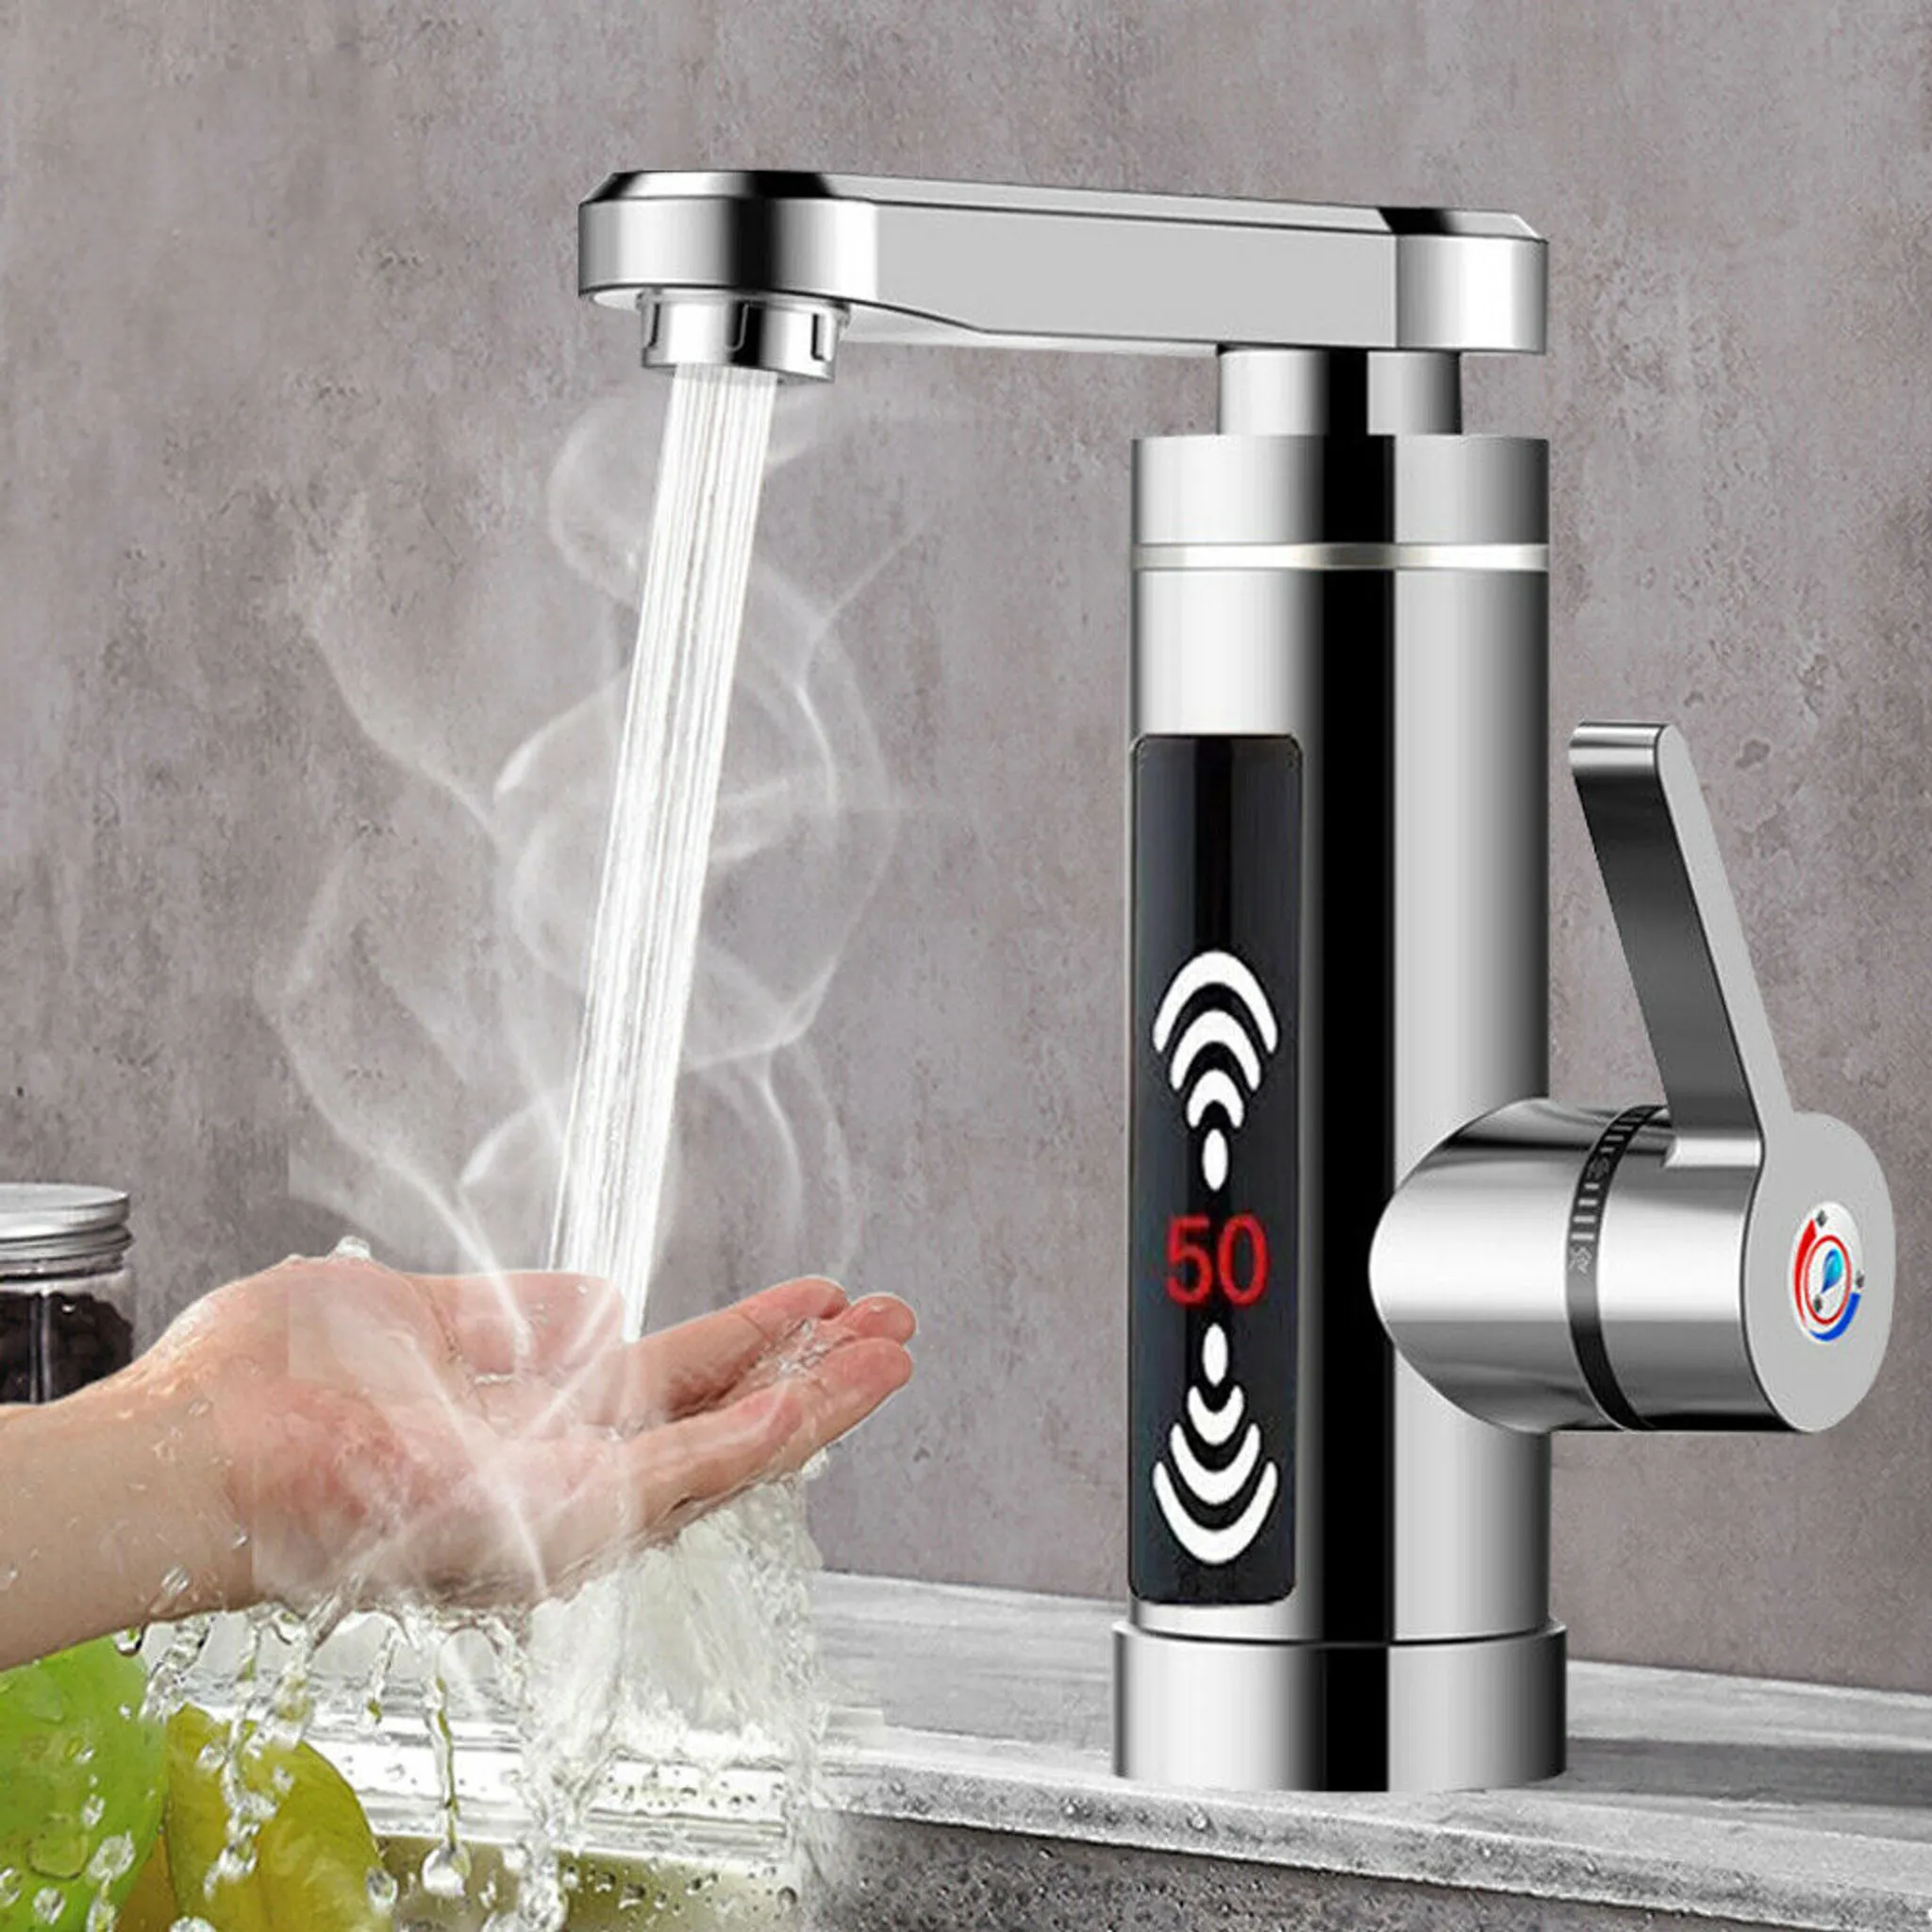 Küche Instant Elektrische Wasserhahn Berühren Steuerung Mini Heißer Wasser  Heizung Dusche Tap Temperatur Einstellbar LED Display 3000W 220V -  AliExpress